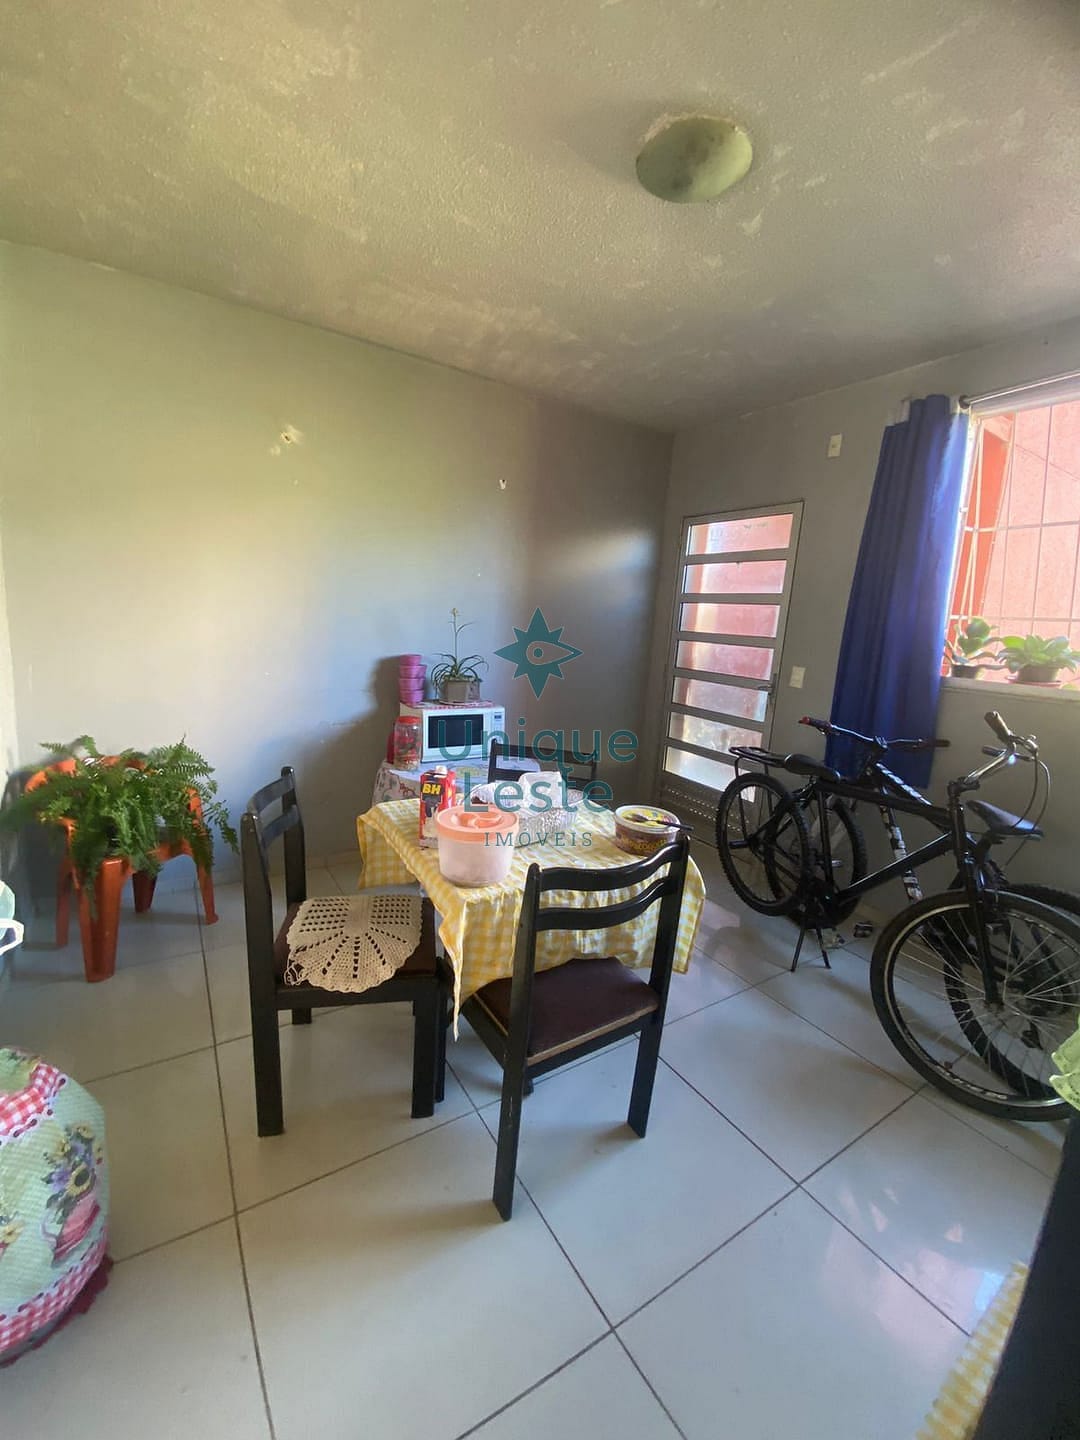 Apartamento em Jardim Vitória, Belo Horizonte/MG de 47m² 2 quartos à venda por R$ 108.990,00